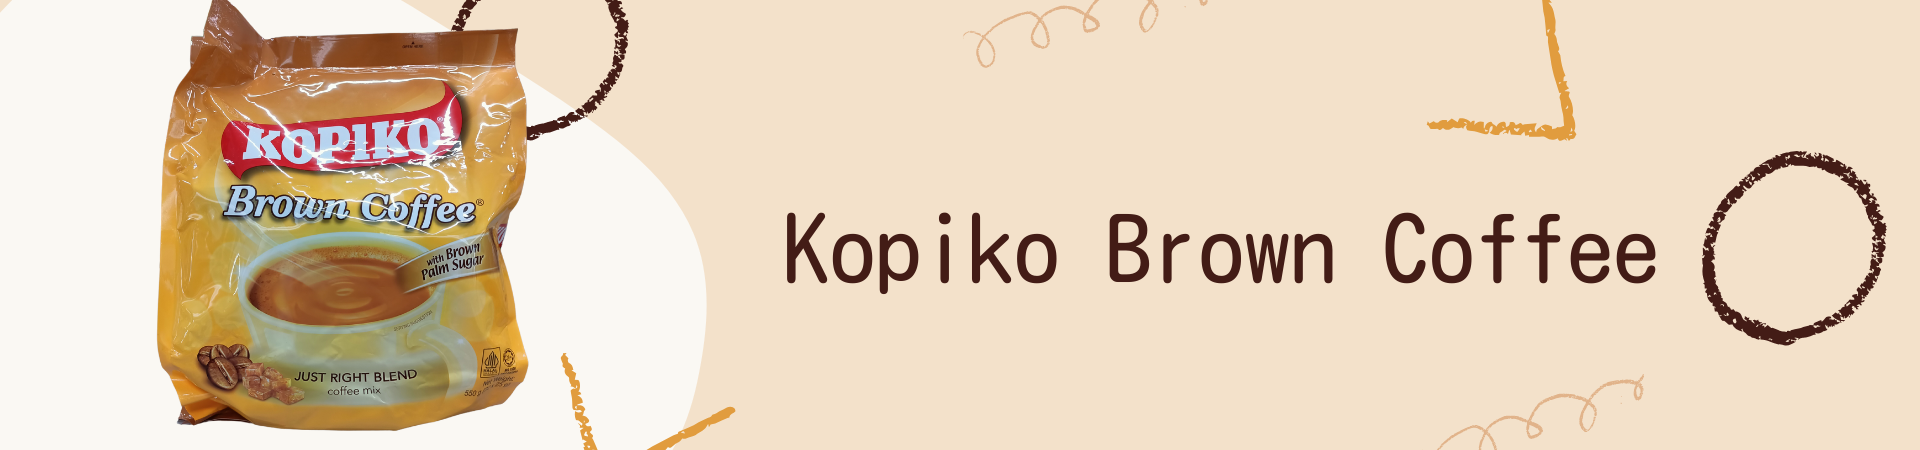 Wide Kopiko